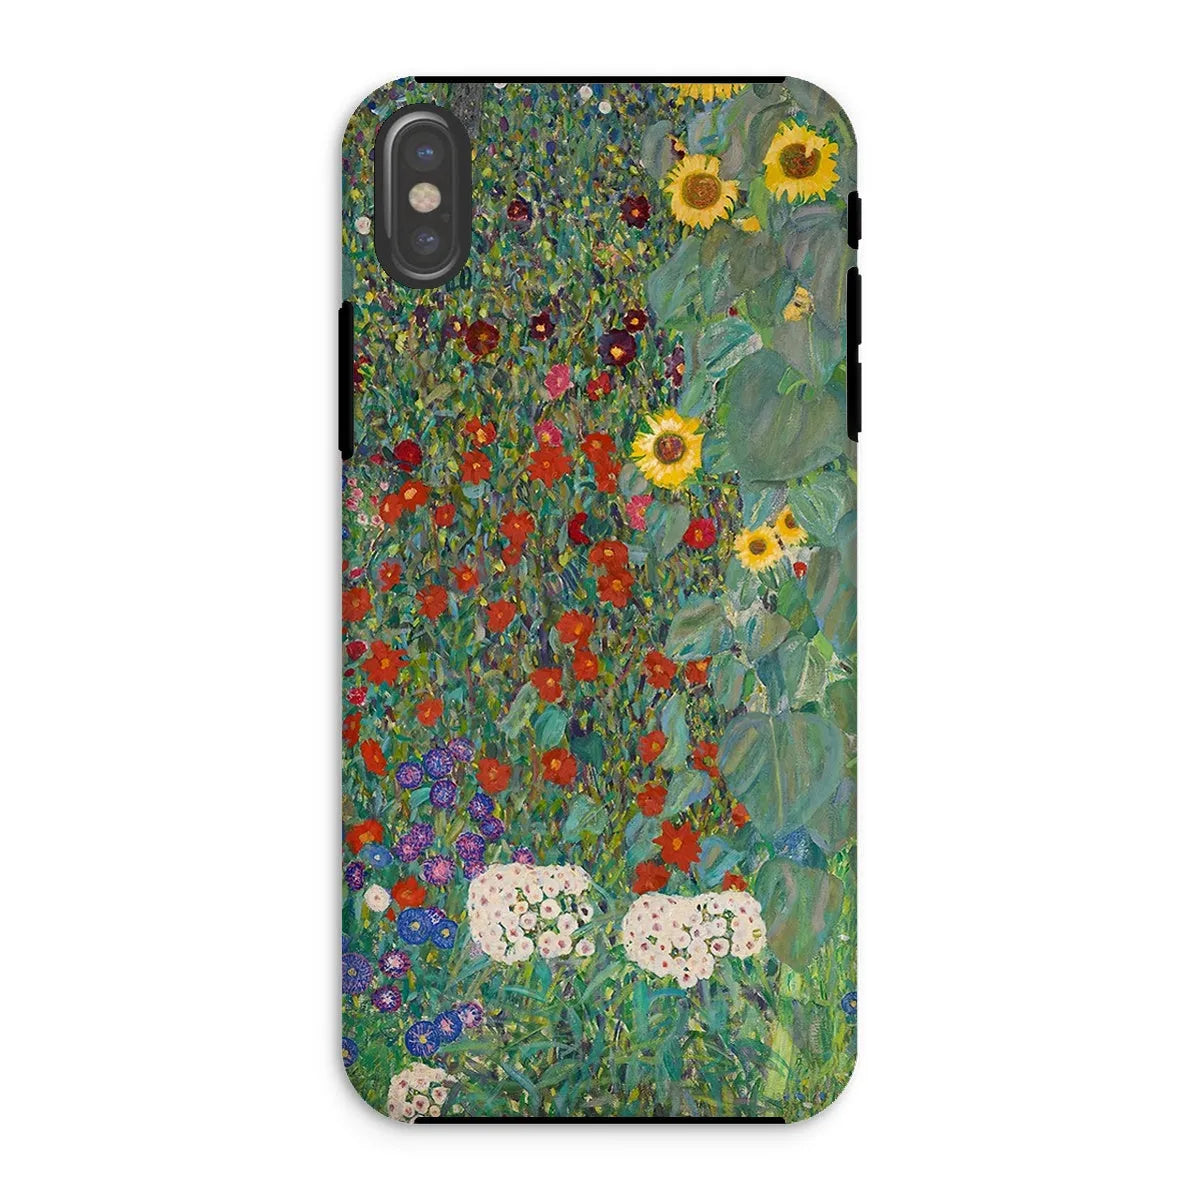 Farm Garden With Sunflowers Art Phone Case - Gustav Klimt - Iphone Xs / Matte - Mobile Phone Cases - Aesthetic Art